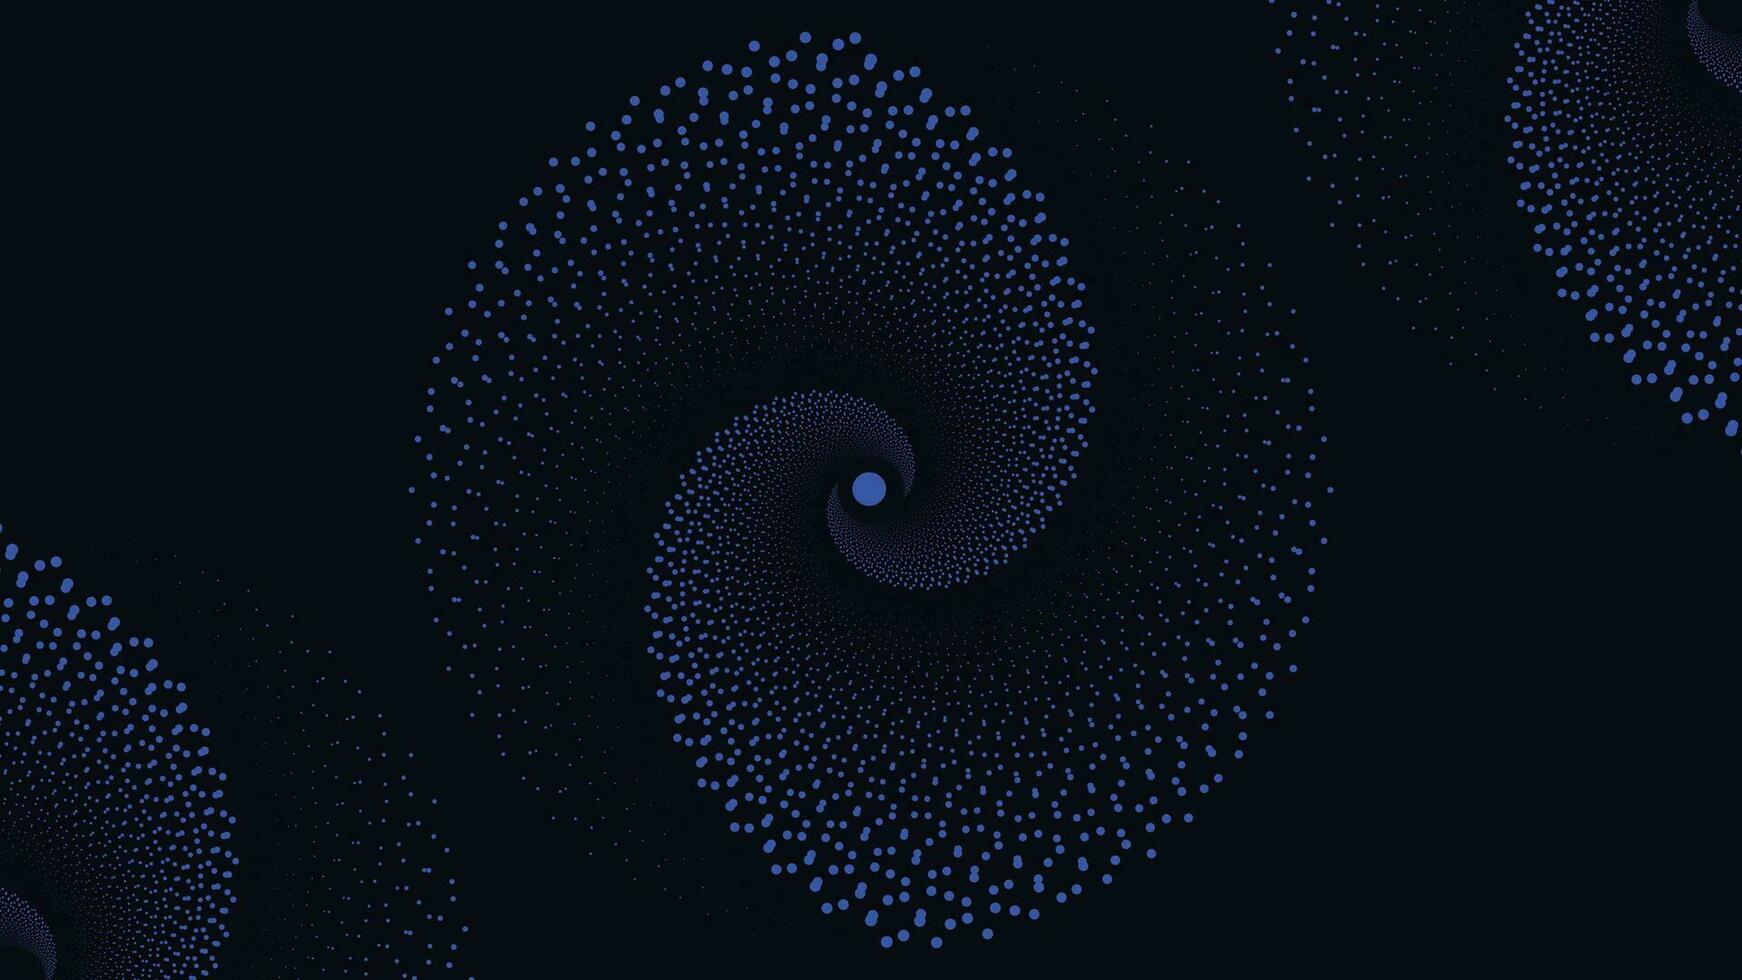 Abstract spiral dark blue background vector